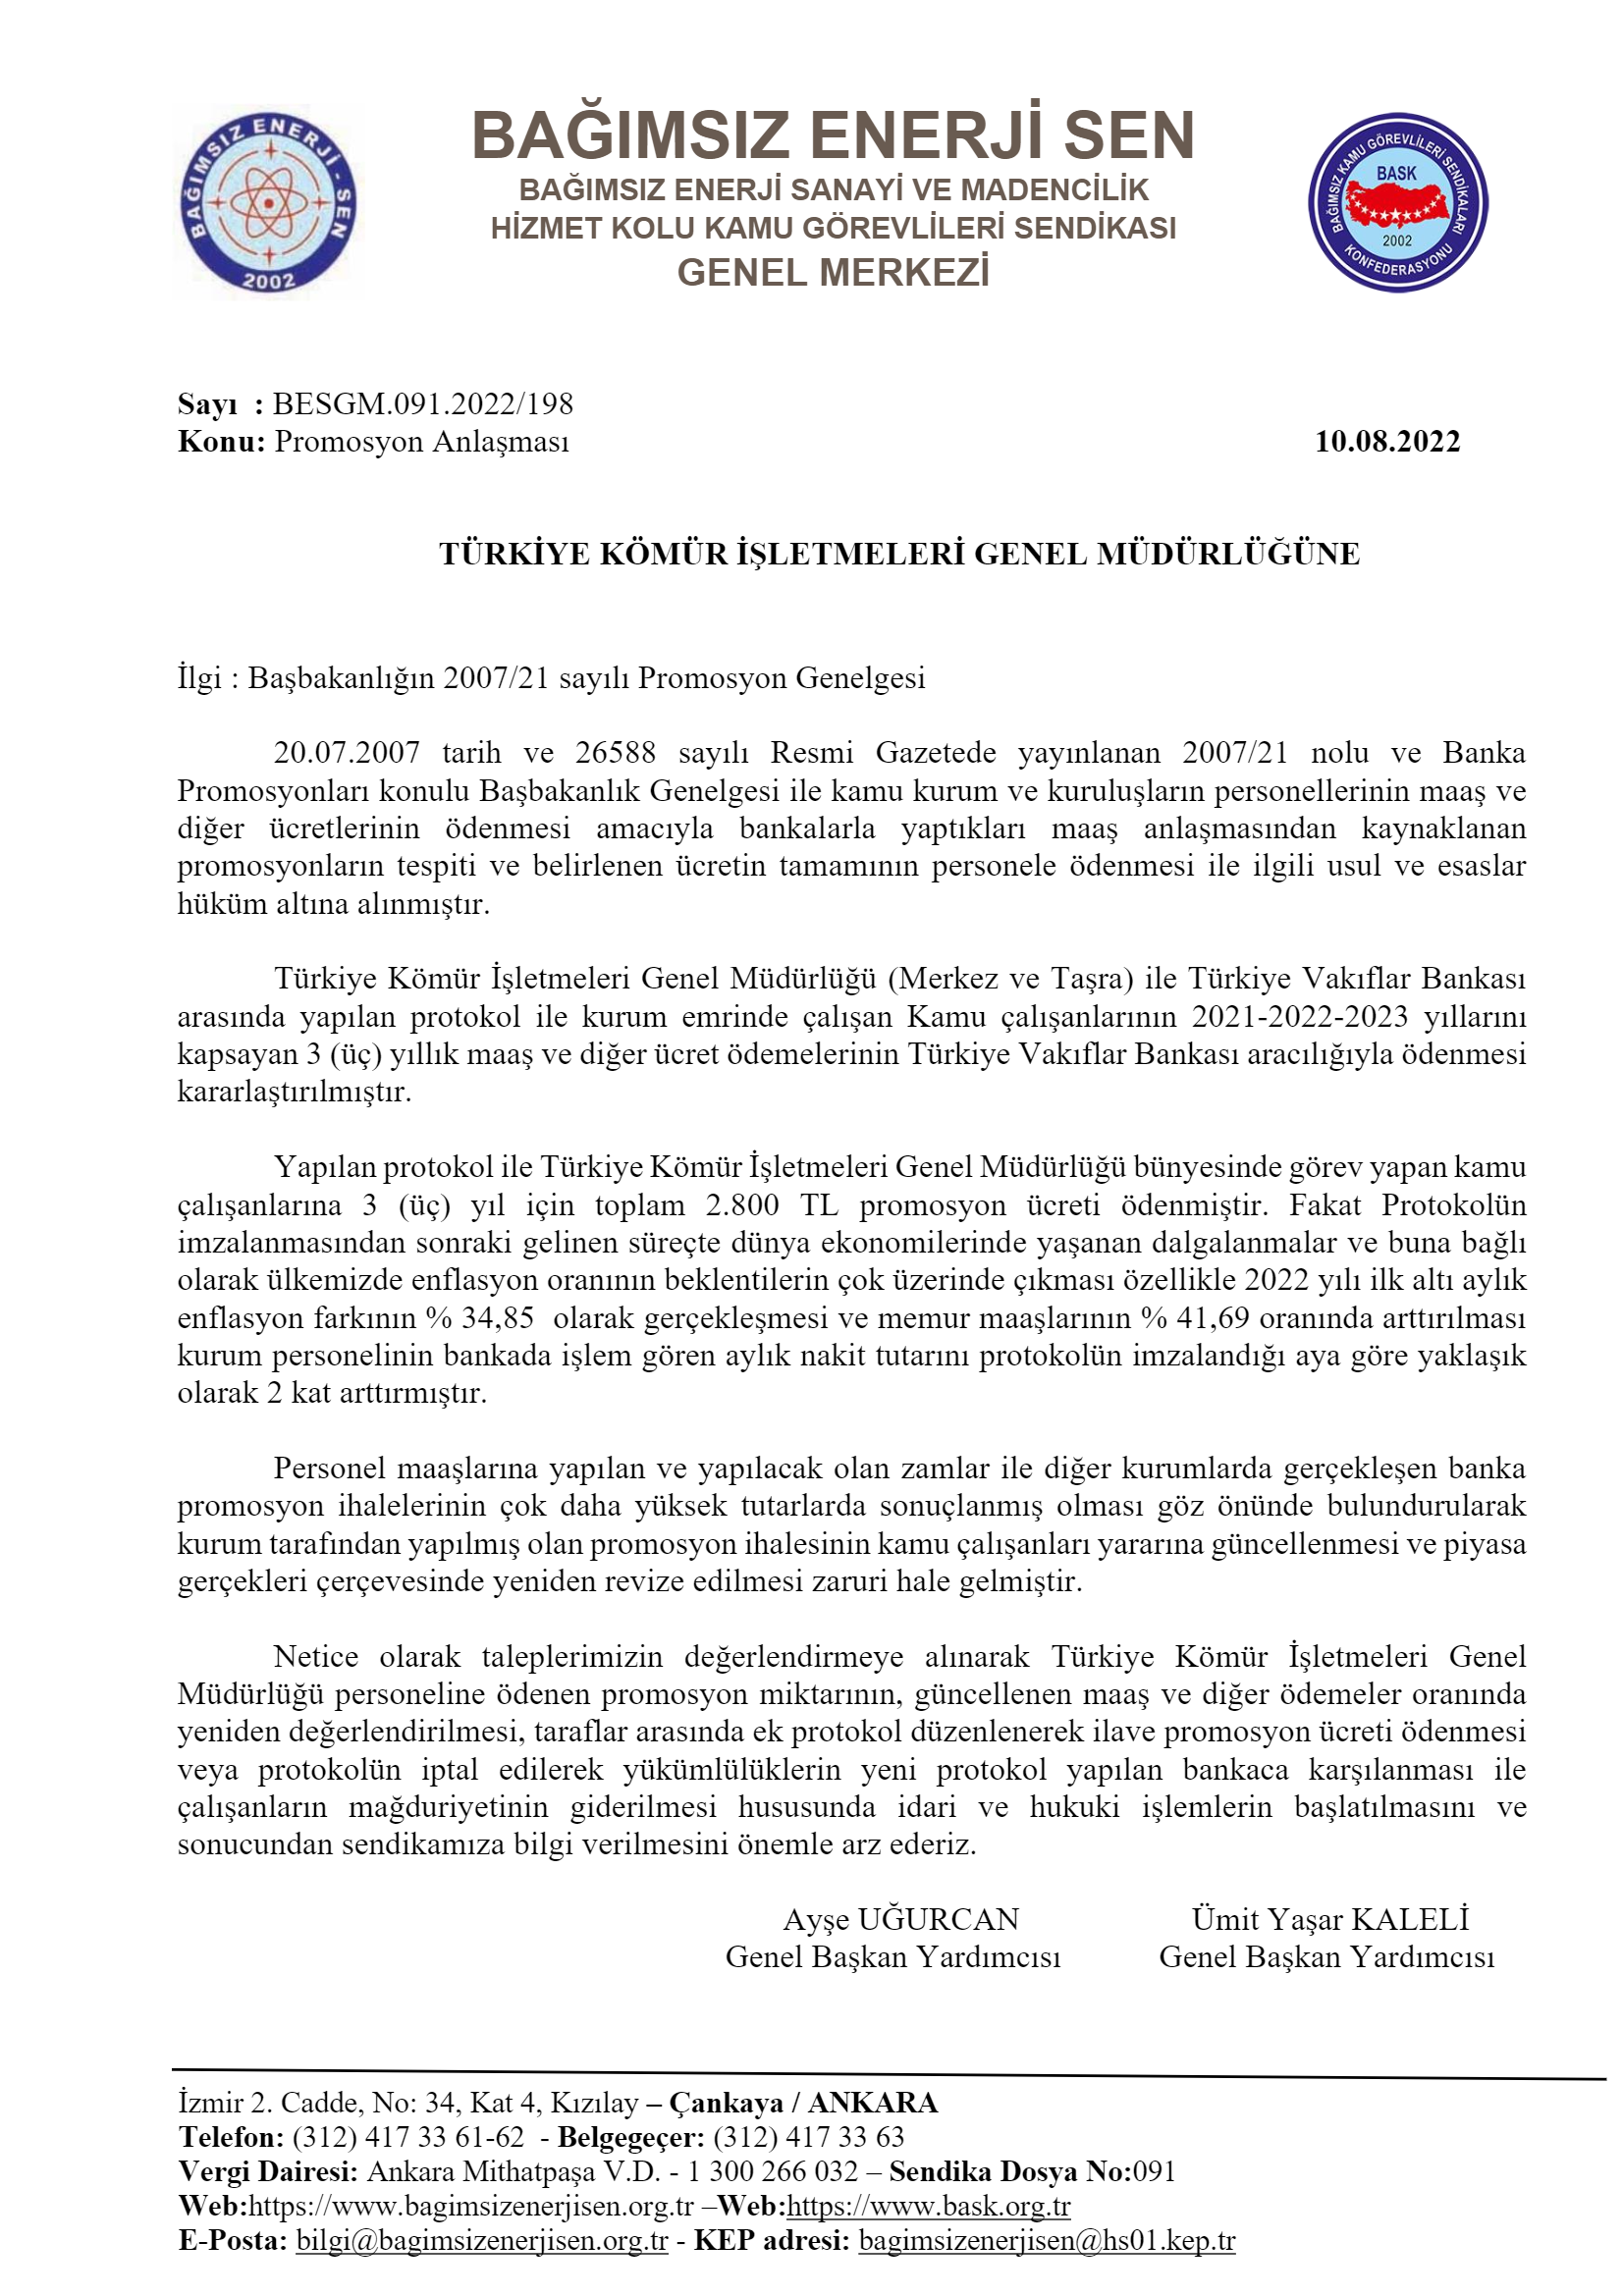 Türkiye Kömür İşletmeleri Genel Müdürlüğü Banka Promosyon Anlaşması Güncellenmesi Talebimiz